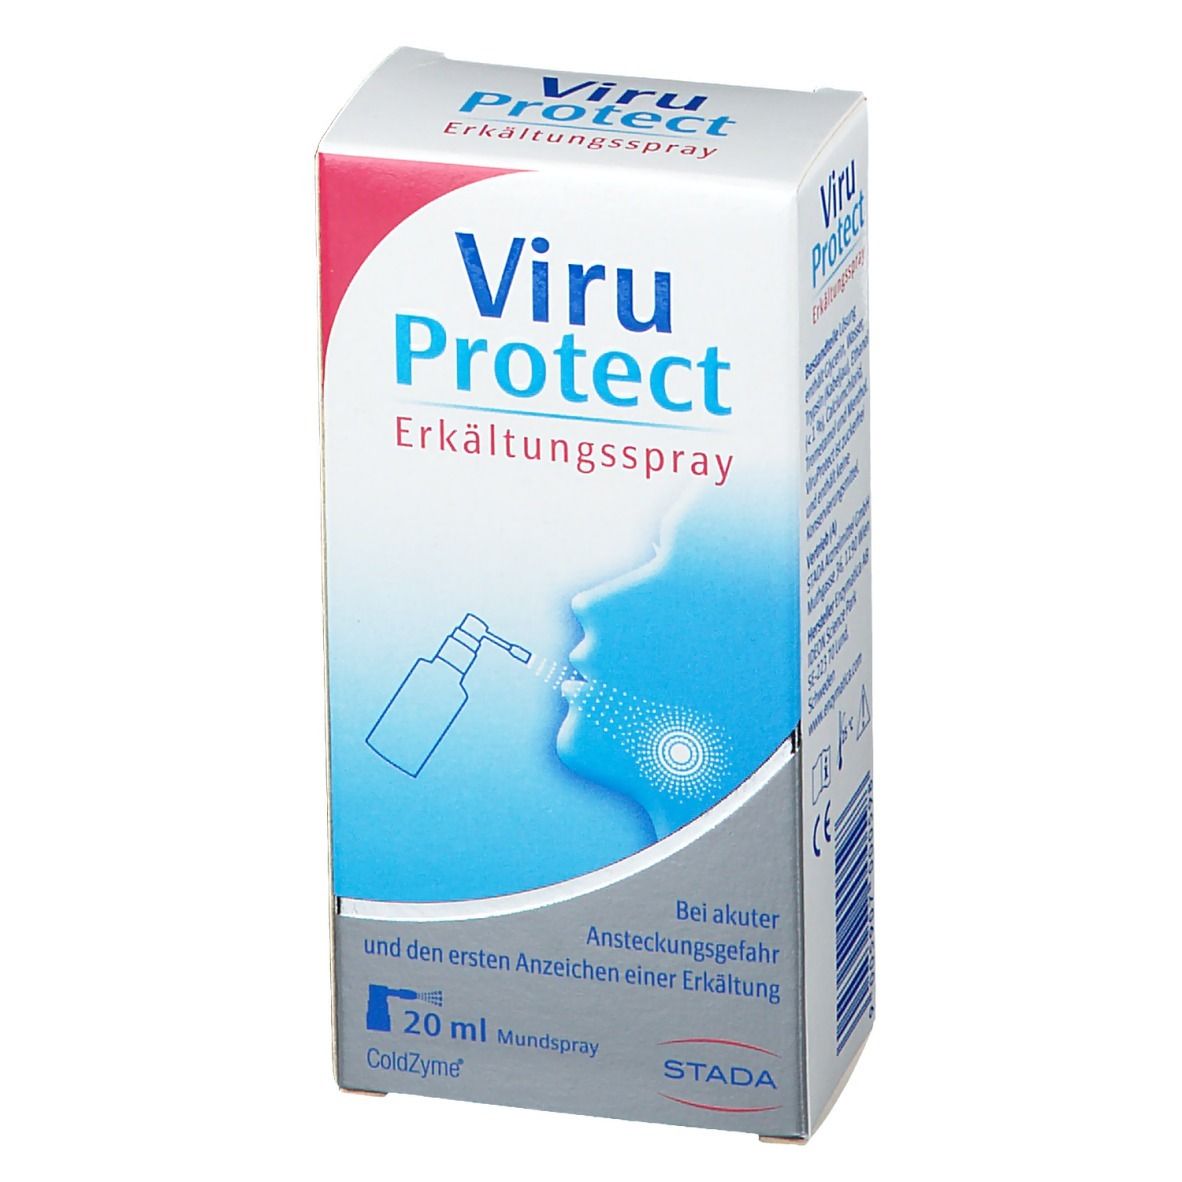 ViruProtect Erkältungsspray bei Ansteckungsgefahr und Erkältungsymptomen